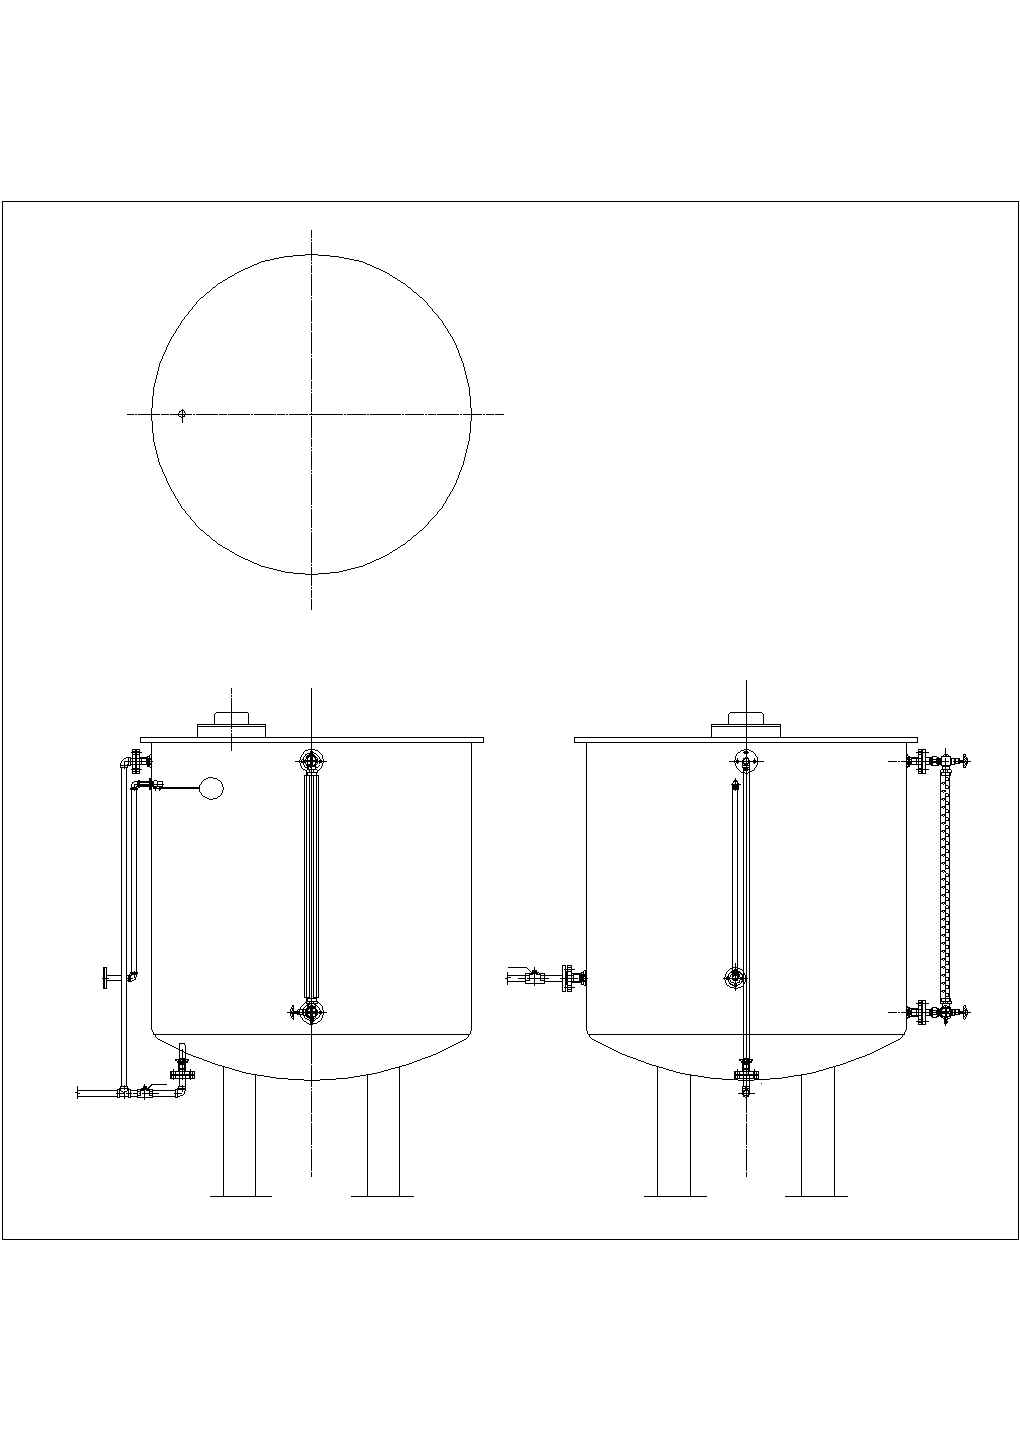 储水桶外形及管路连接示意图